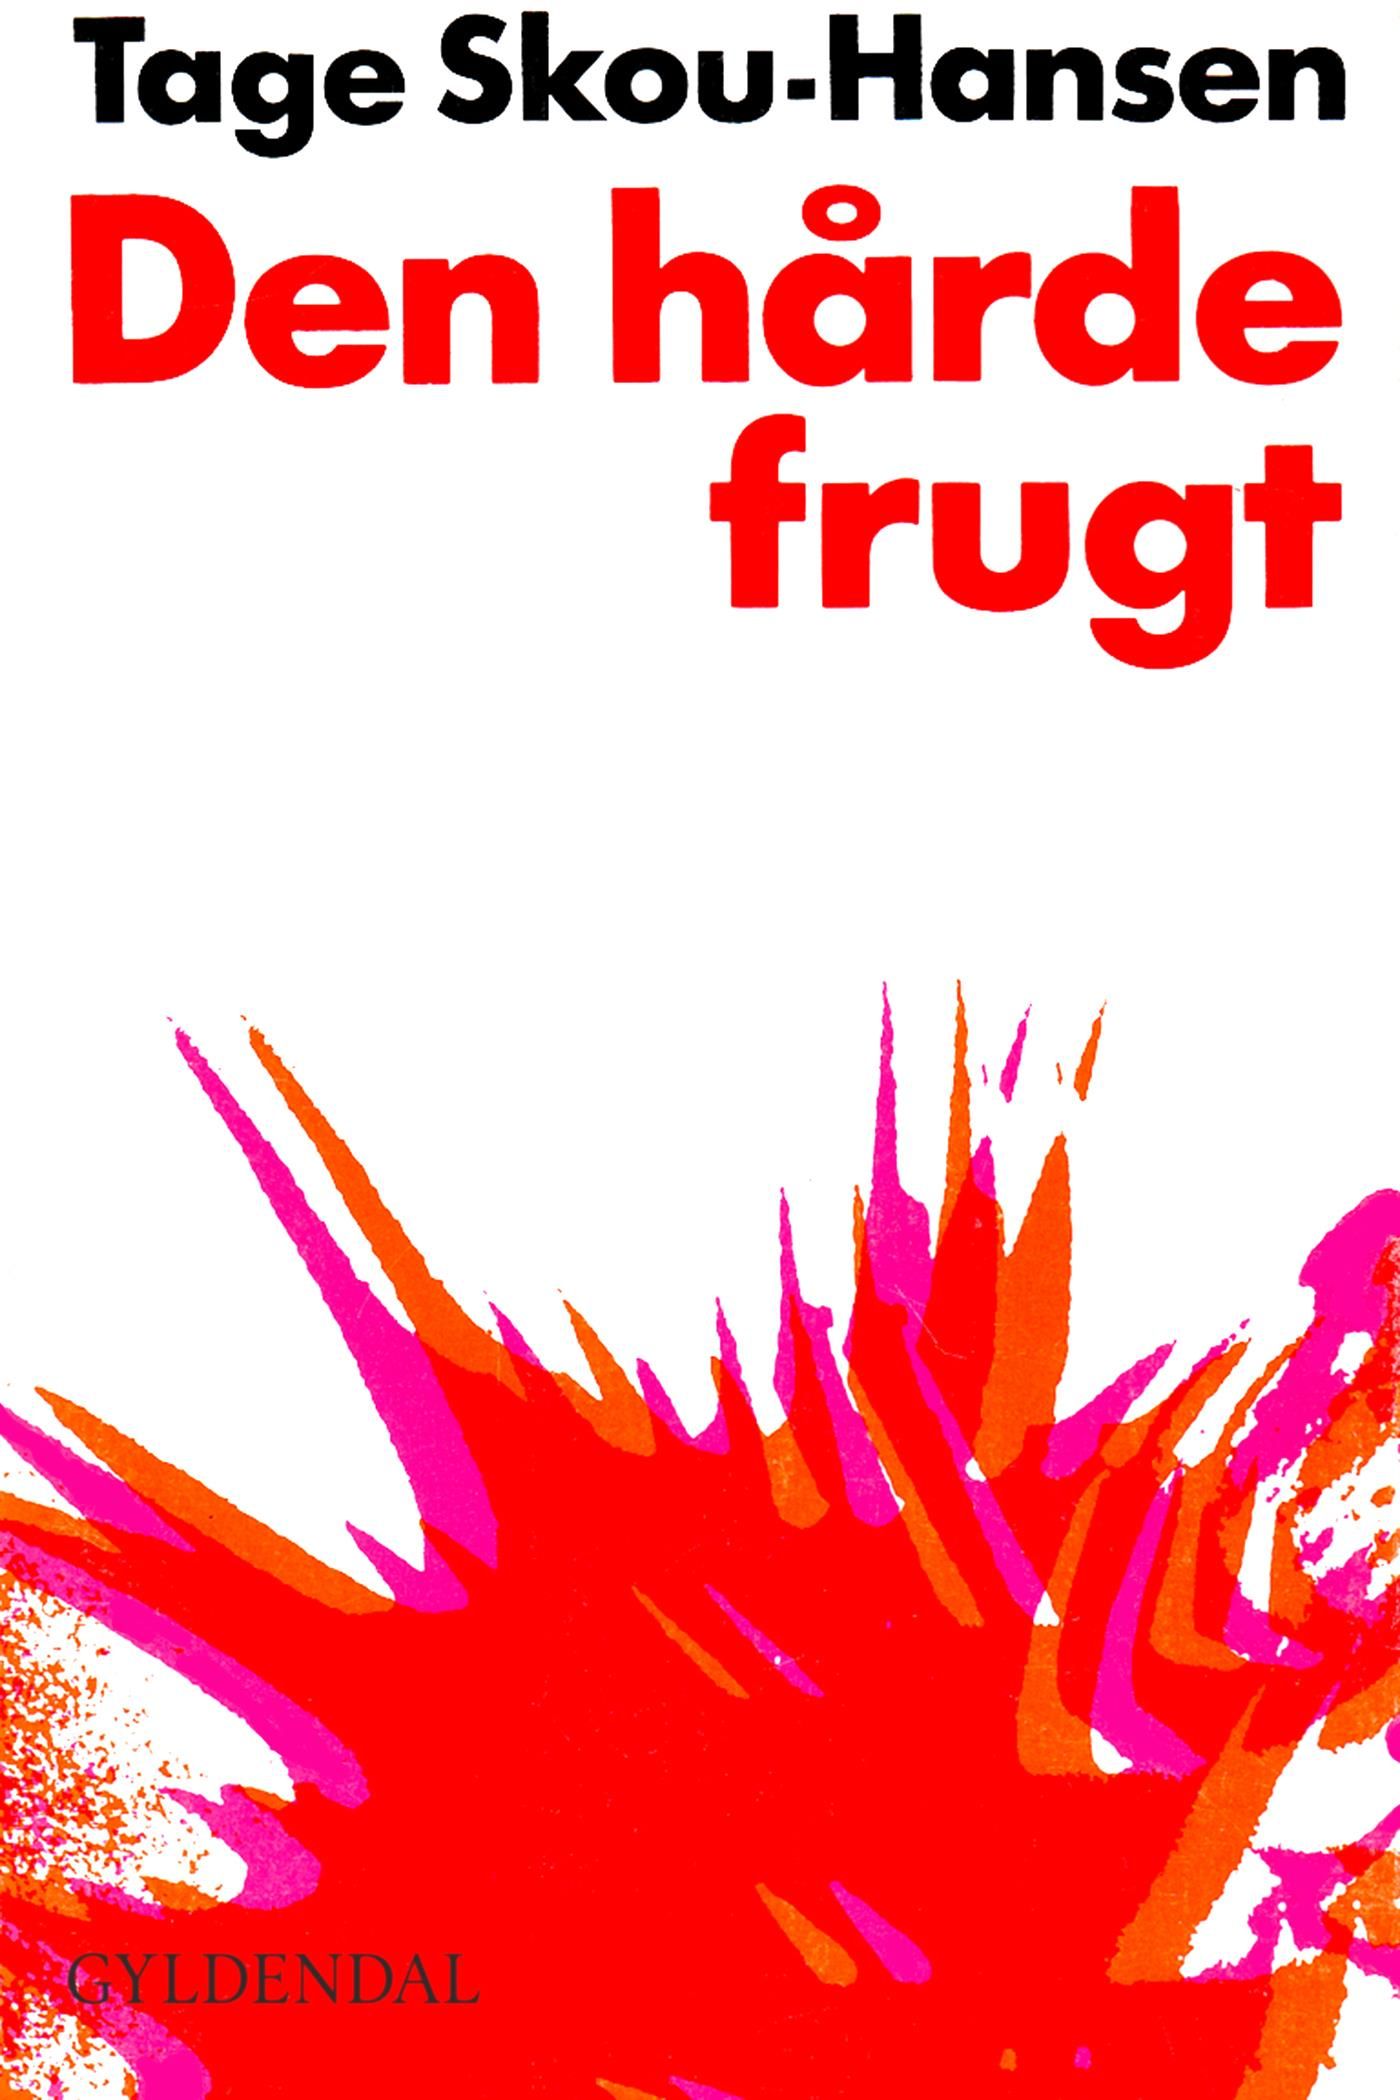 Den hårde frugt, e-bok av Tage Skou-Hansen